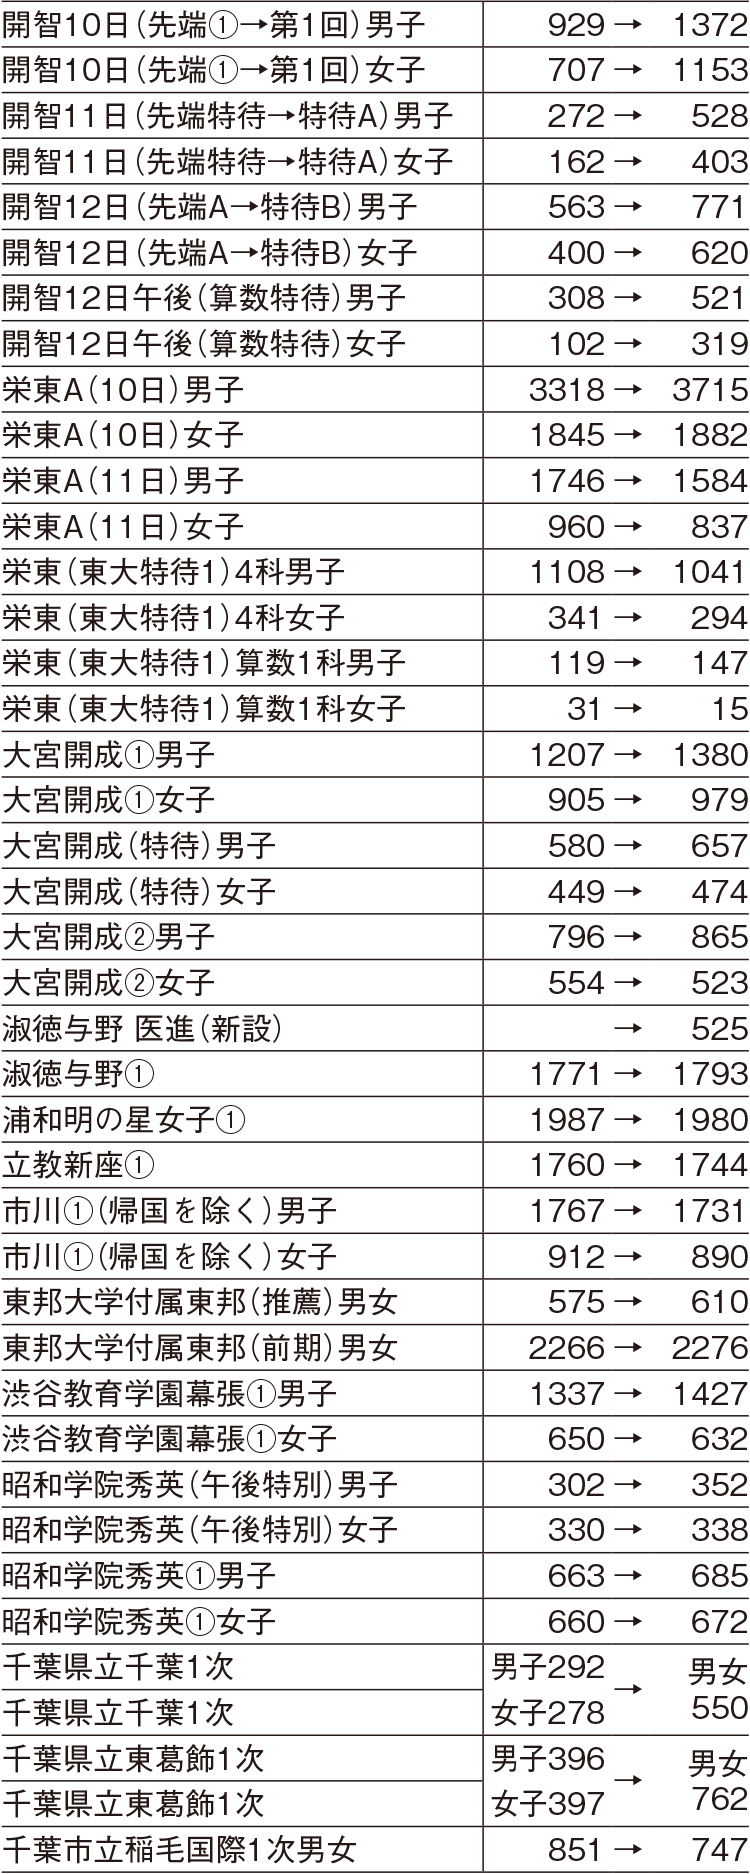 埼玉県・千葉県の主な学校の応募者の増減（2023年→2024年）